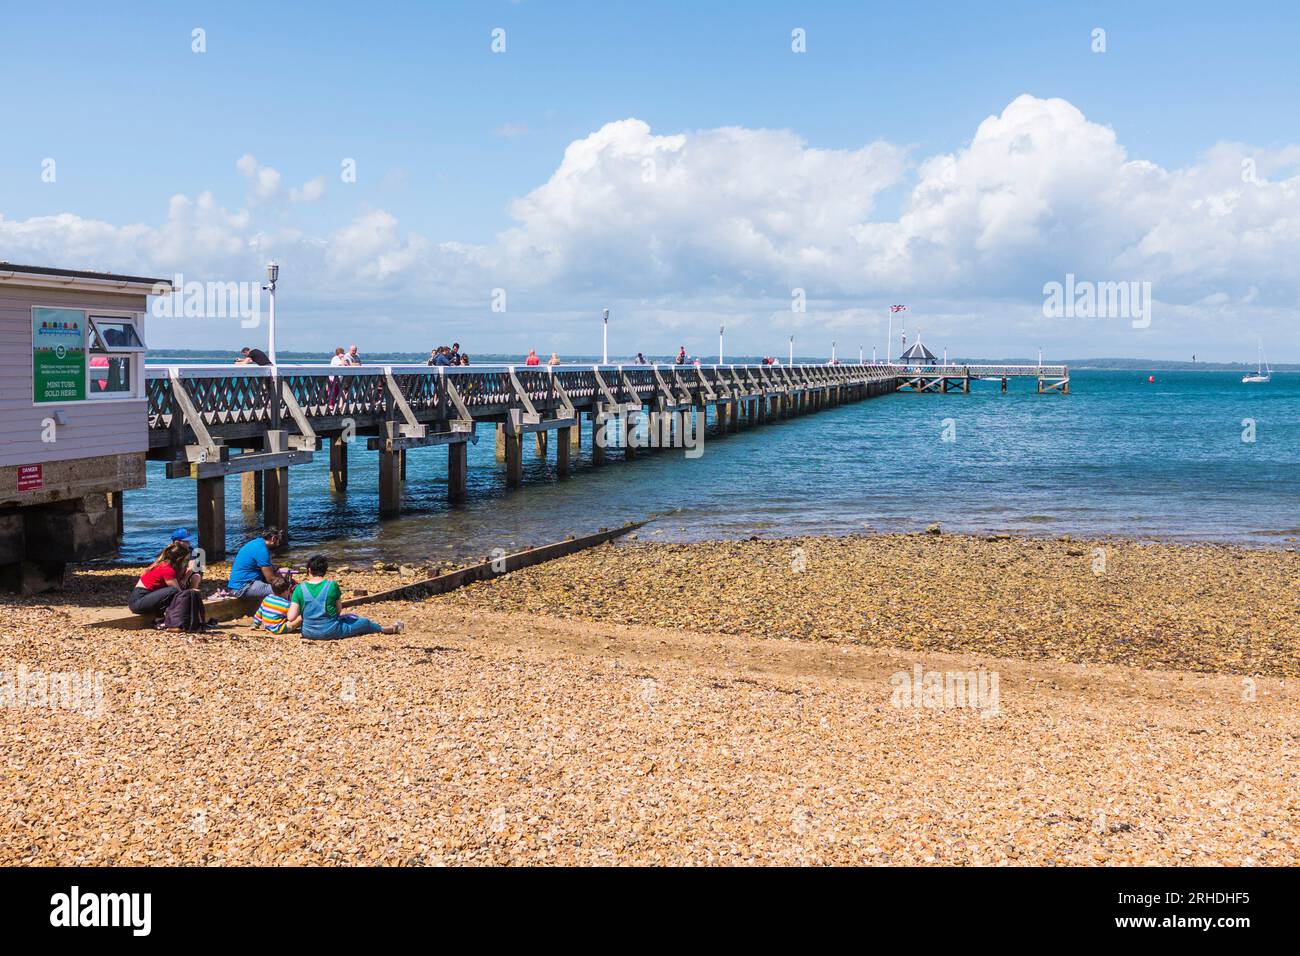 La gente si sedeva sulla spiaggia godendosi il sole vicino al molo di Yarmouth, Isola di Wight, Inghilterra, Regno Unito Foto Stock